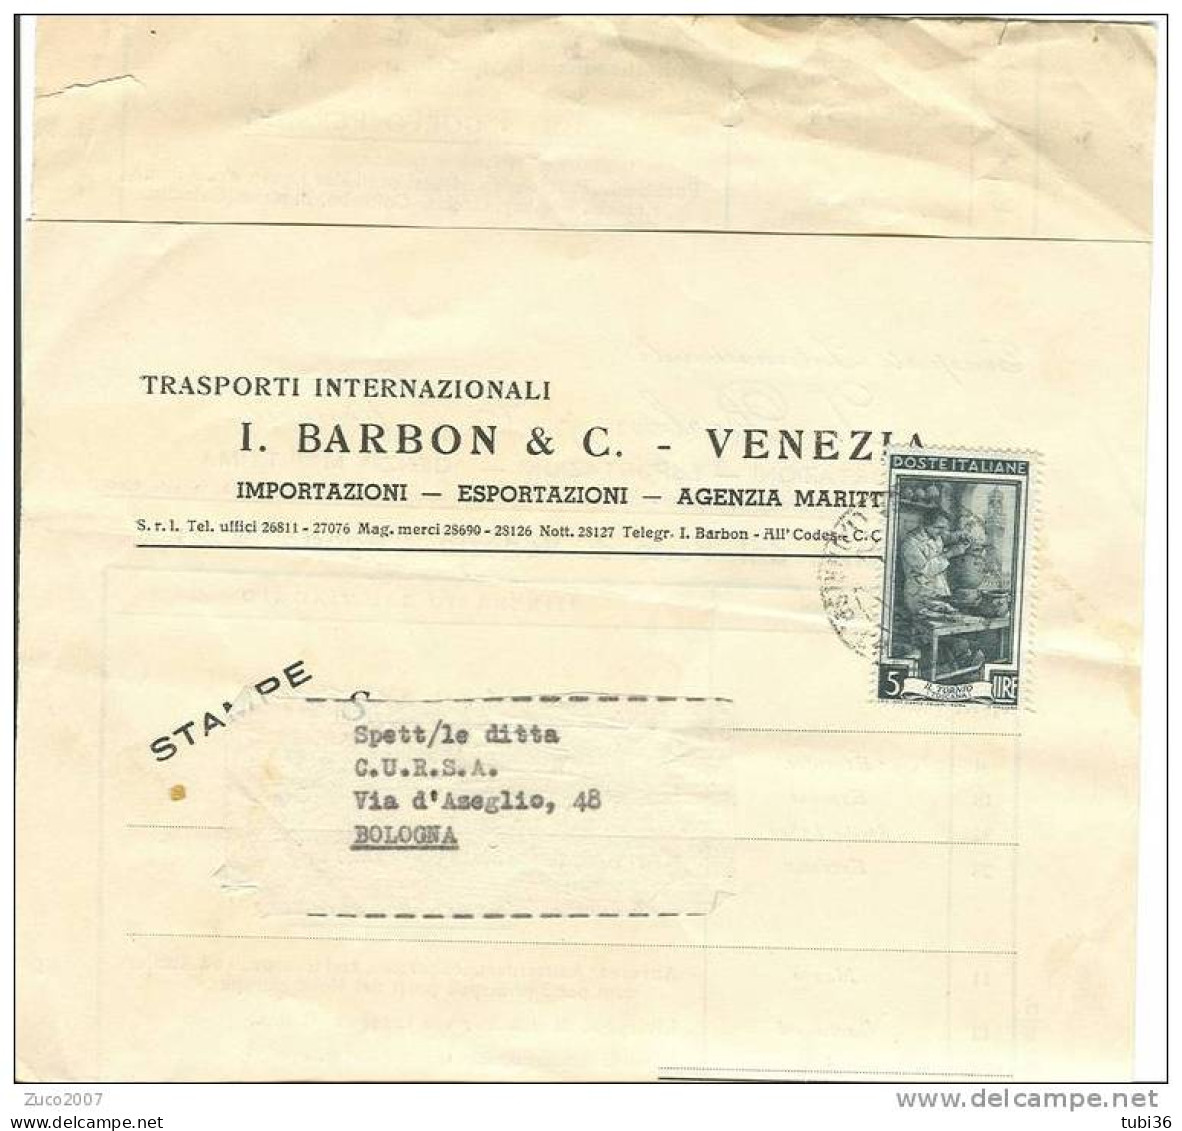 BARBON E C. - VENEZIA - TRASPORTI INTERNAZIONALI - CALENDARIO PARTENZE DAL PORTO DI VENEZIA  1952. - Welt